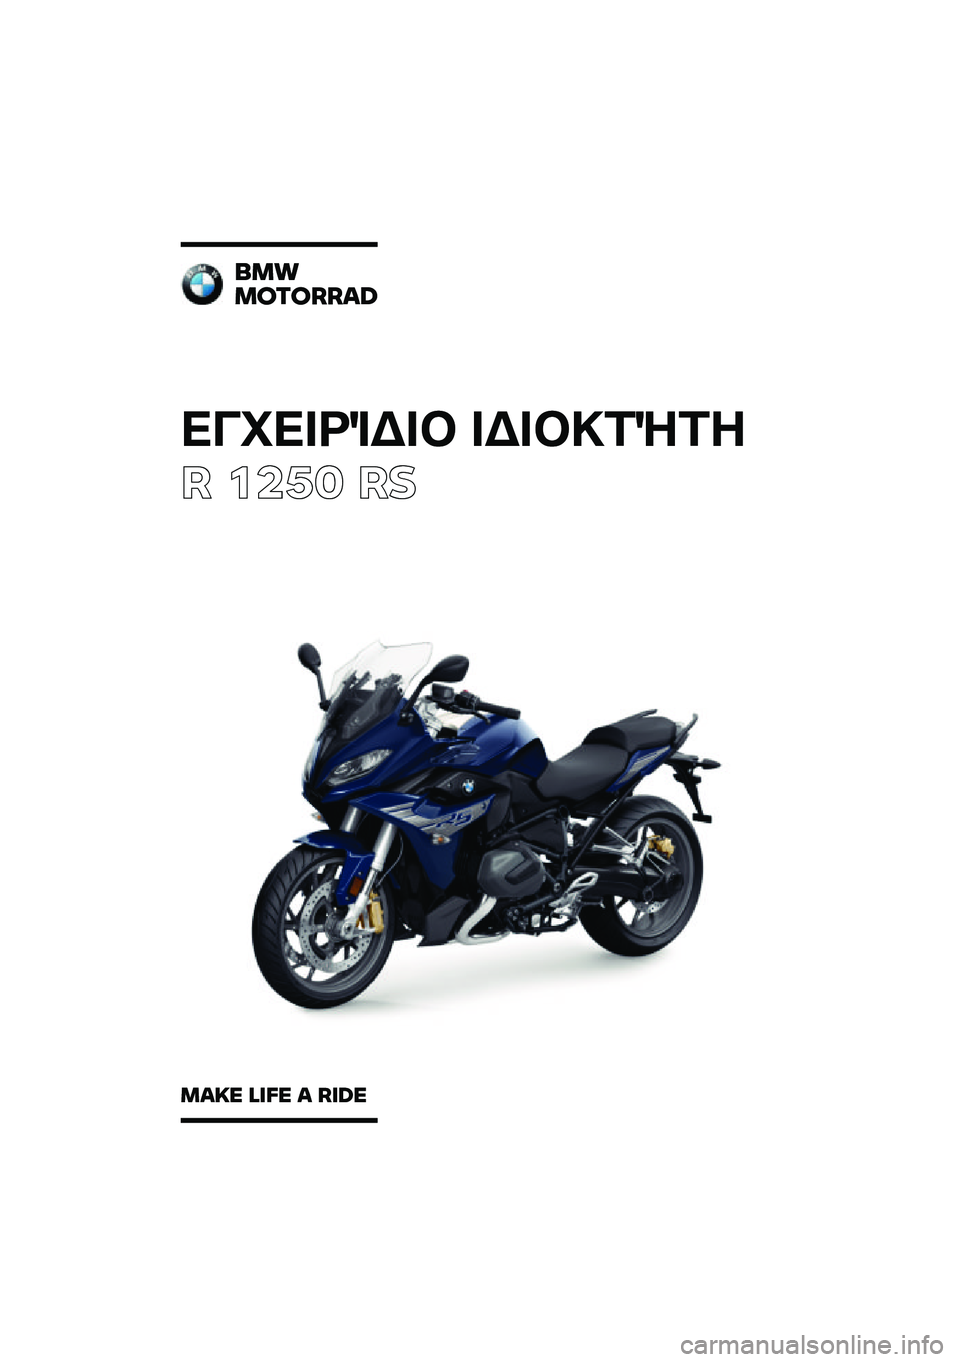 BMW MOTORRAD R 1250 RS 2020  Εγχειρίδιο ιδιοκτήτη (in Greek) ��������\b��	 ��\b��	�
��\f��
� ����	 ��
���
�������\b�	
��\b�
� �\f�
�� �\b ��
�	� 